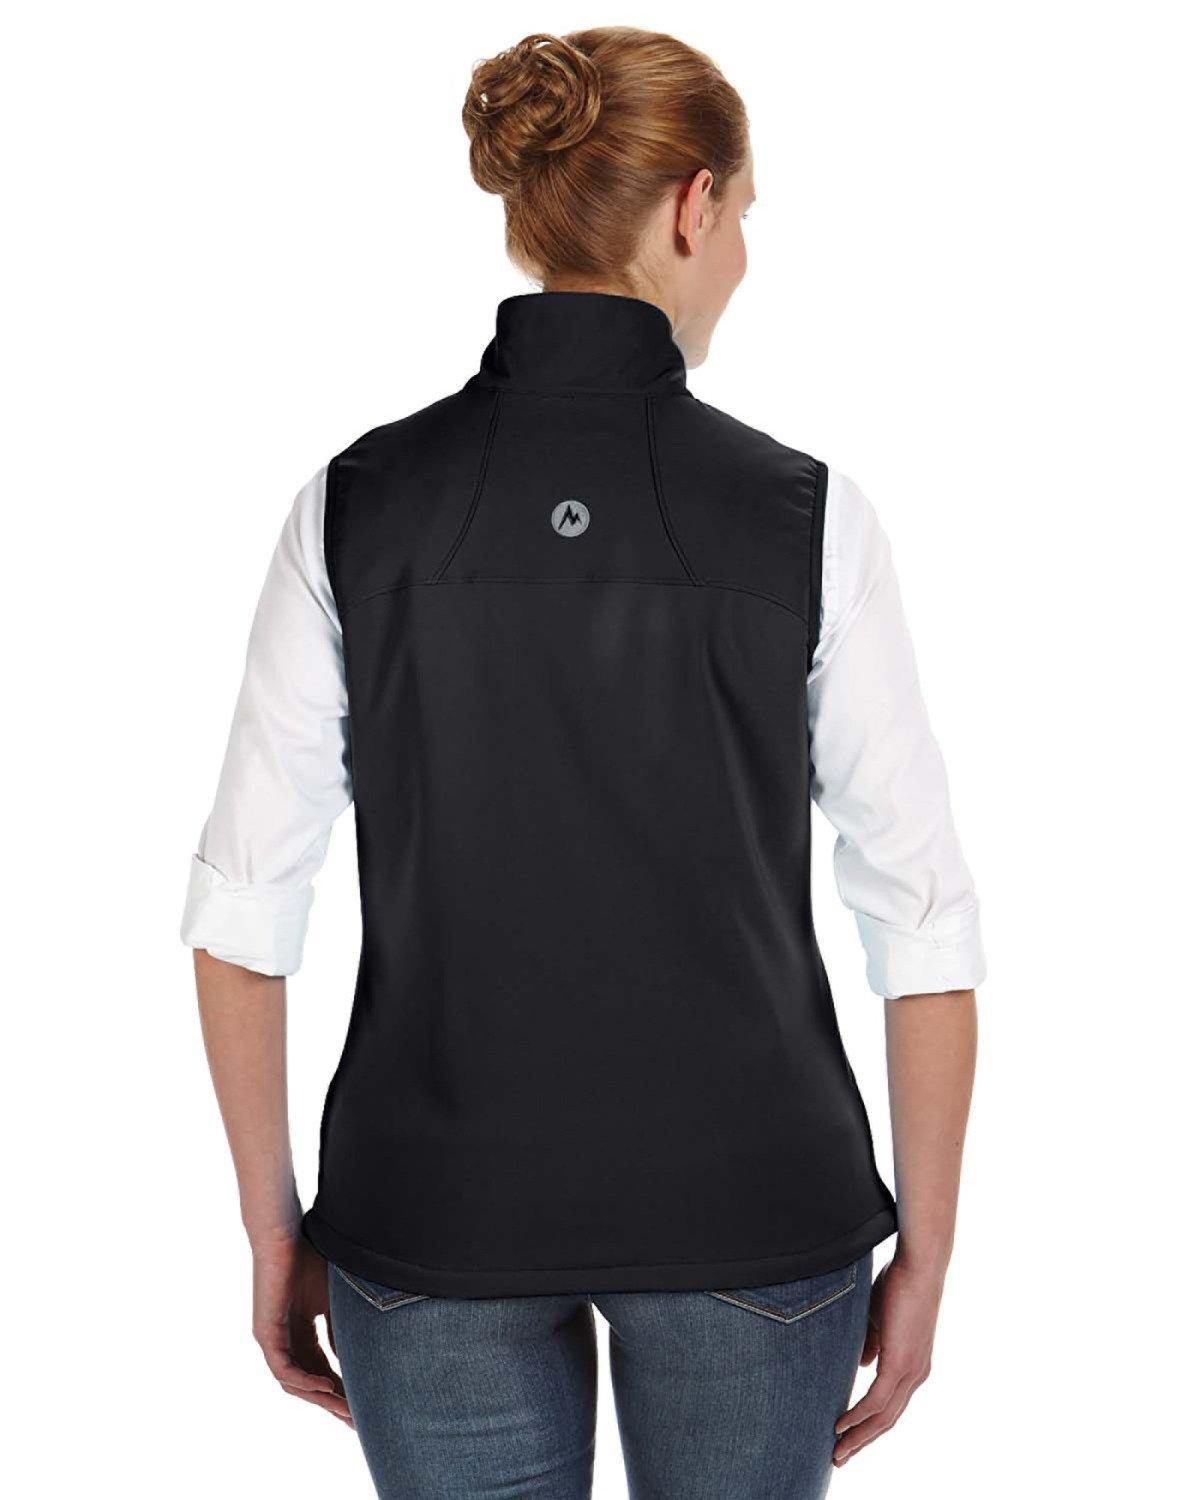 marmot_98220_black_company_logo_jackets